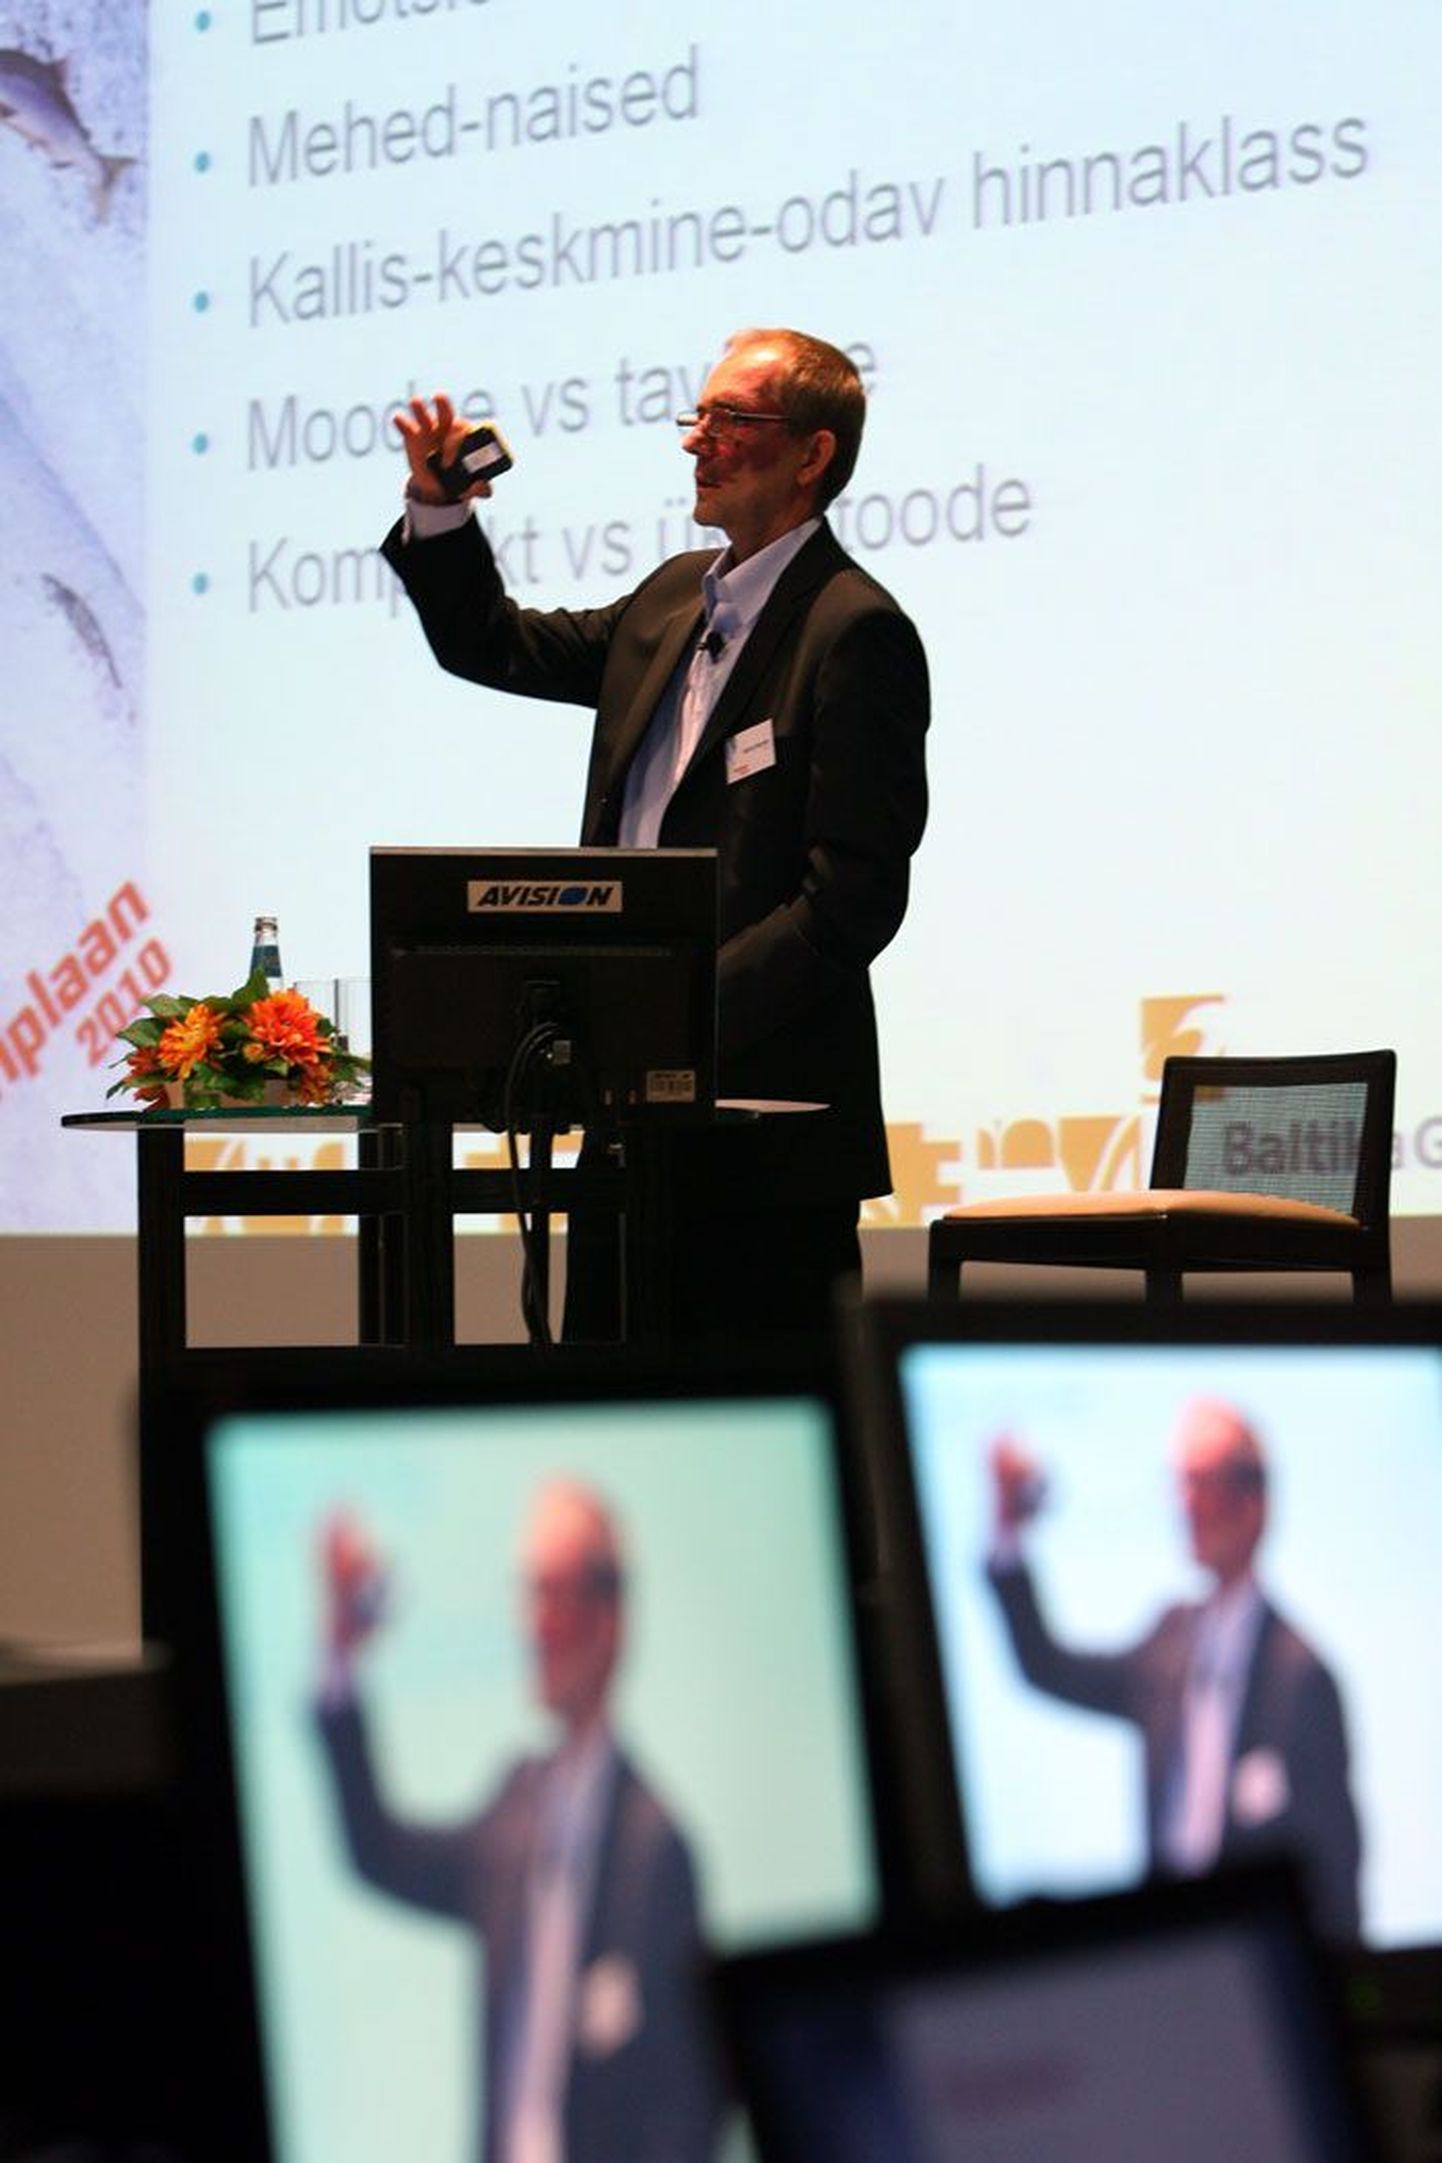 Äripäeva korraldatud konverentsil «Äriplaan 2010» esines eile ka Baltika juht Meelis Milder.